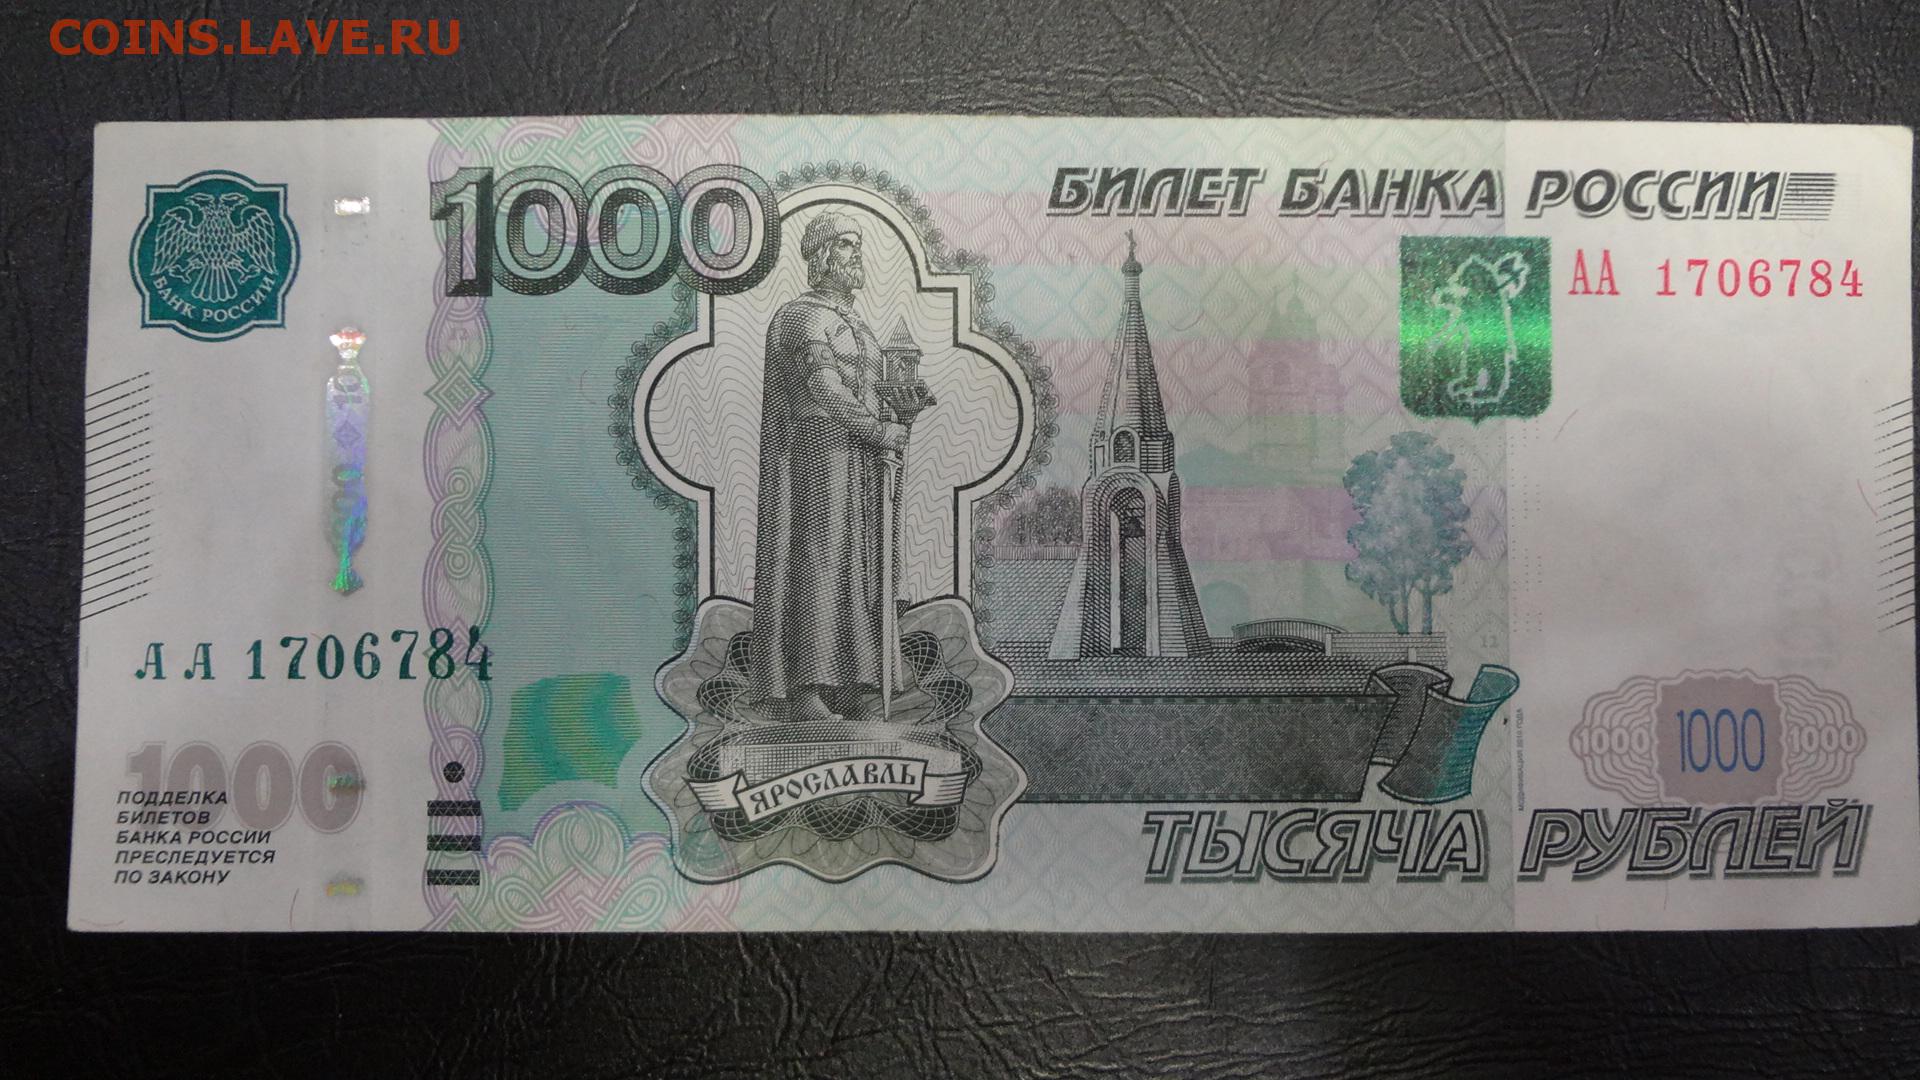 22 тыс 1 тыс поделиться. 1000 Рублей. Купюра 1000 рублей. Банкнота 1000 рублей. Банкнота 1000 рублей 2010 года.